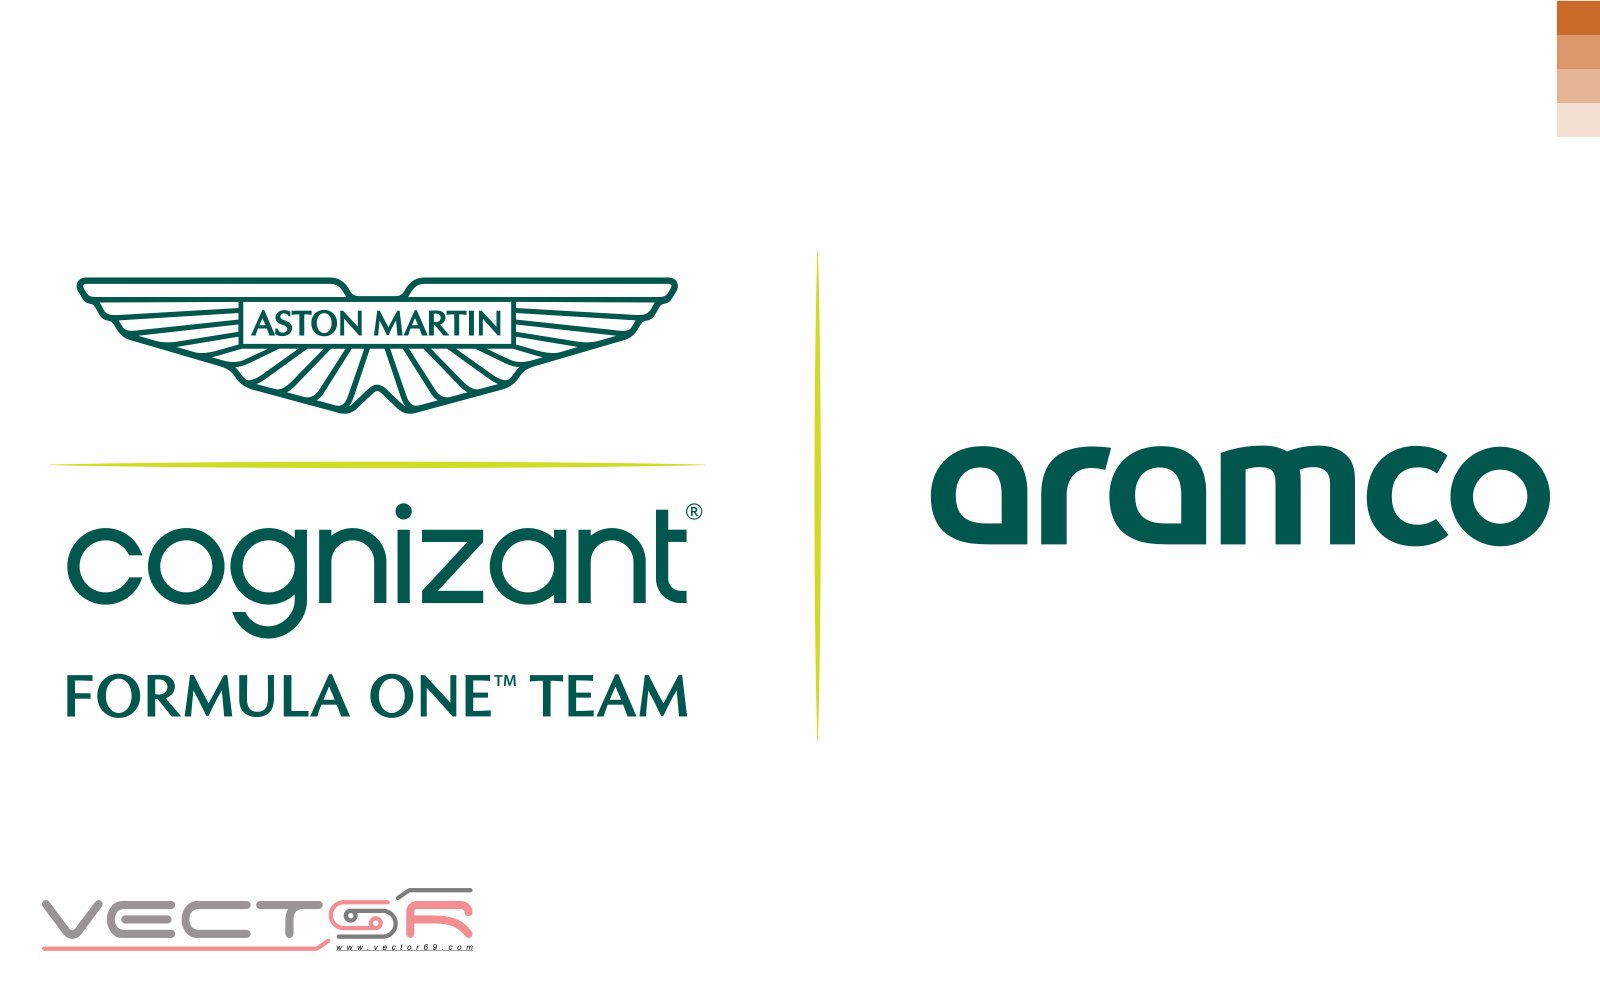 Aston Martin Aramco Cognizant F1 Team Logo - Download Vector File AI (Adobe Illustrator)